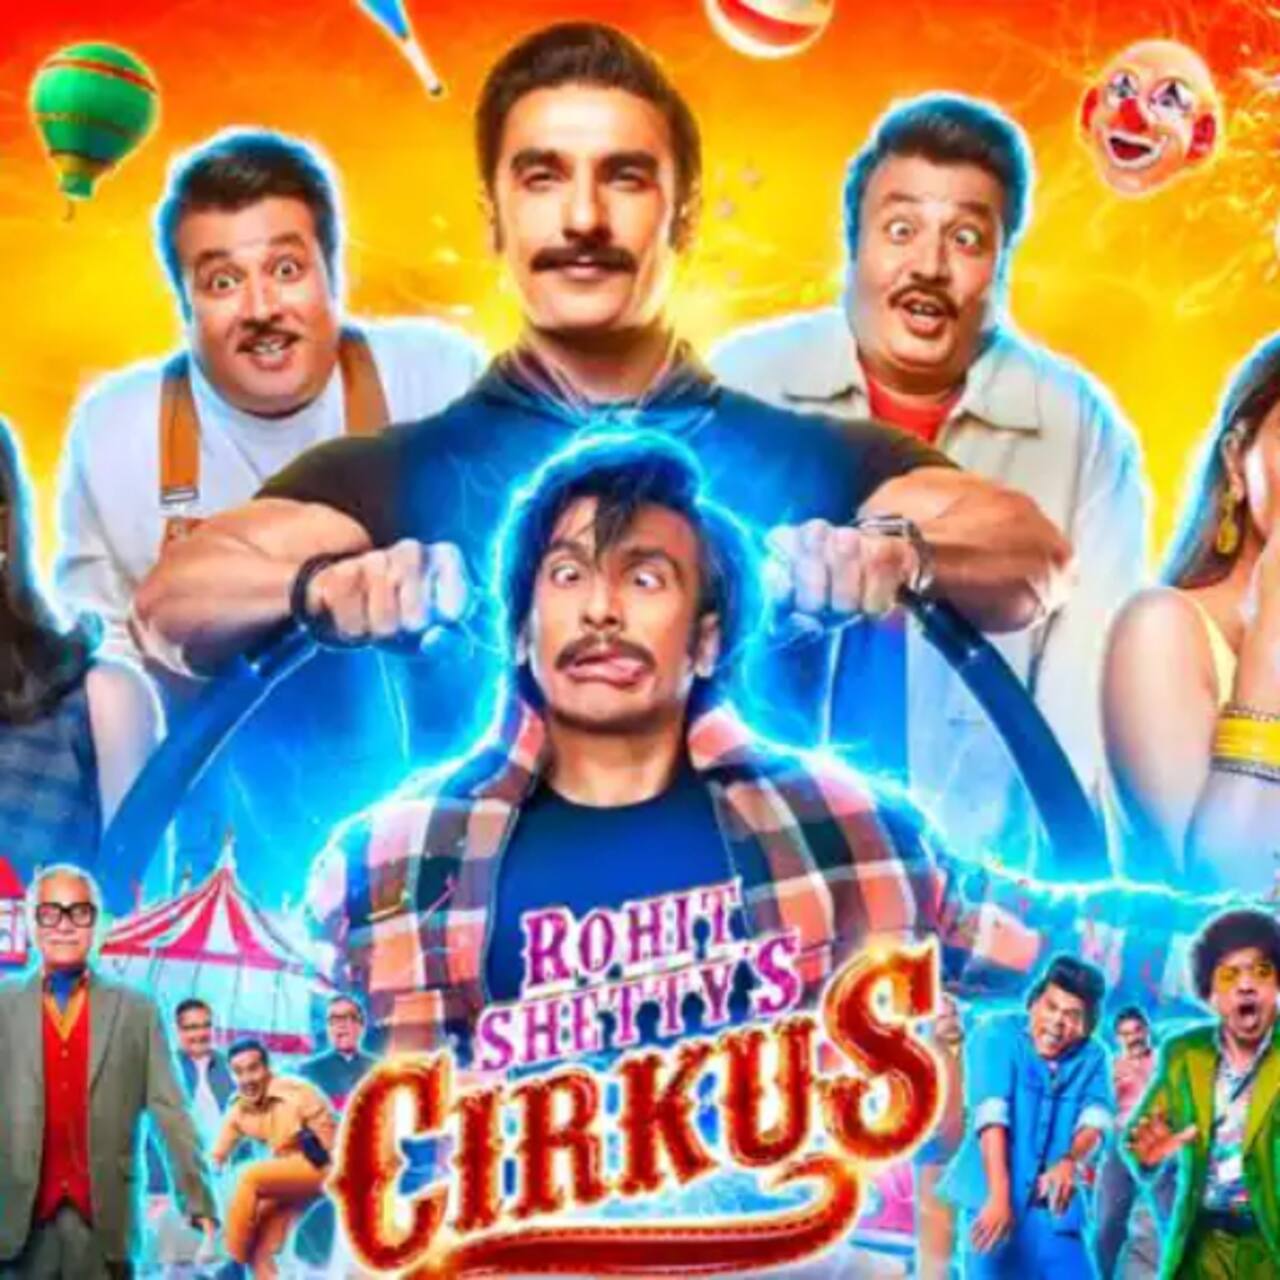 Cirkus Box Office Collection Day 1: ओपनिंग डे पर मुंह के बल गिरी रणवीर सिंह की 'सर्कस', आंकड़े देख छूटे मेकर्स के पसीने